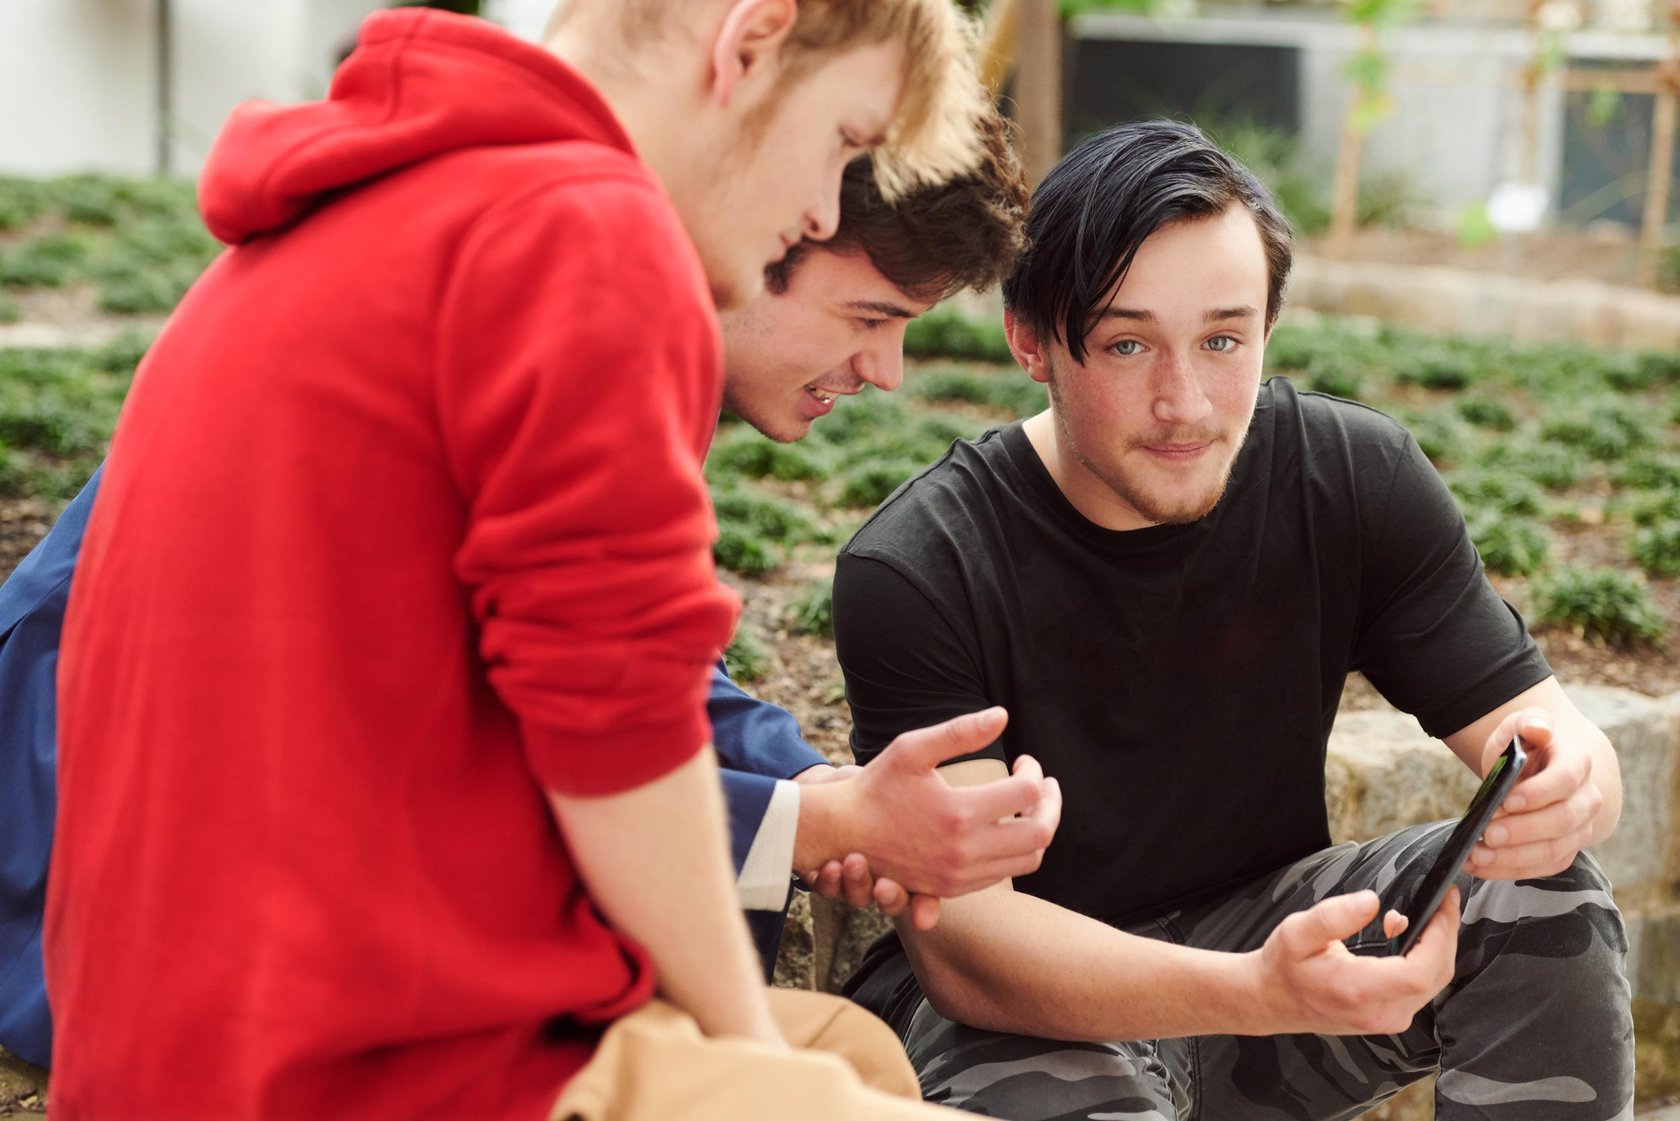 Drei junge Careleaver sitzen im Garten und schauen gemeinsam auf ein Smartphone